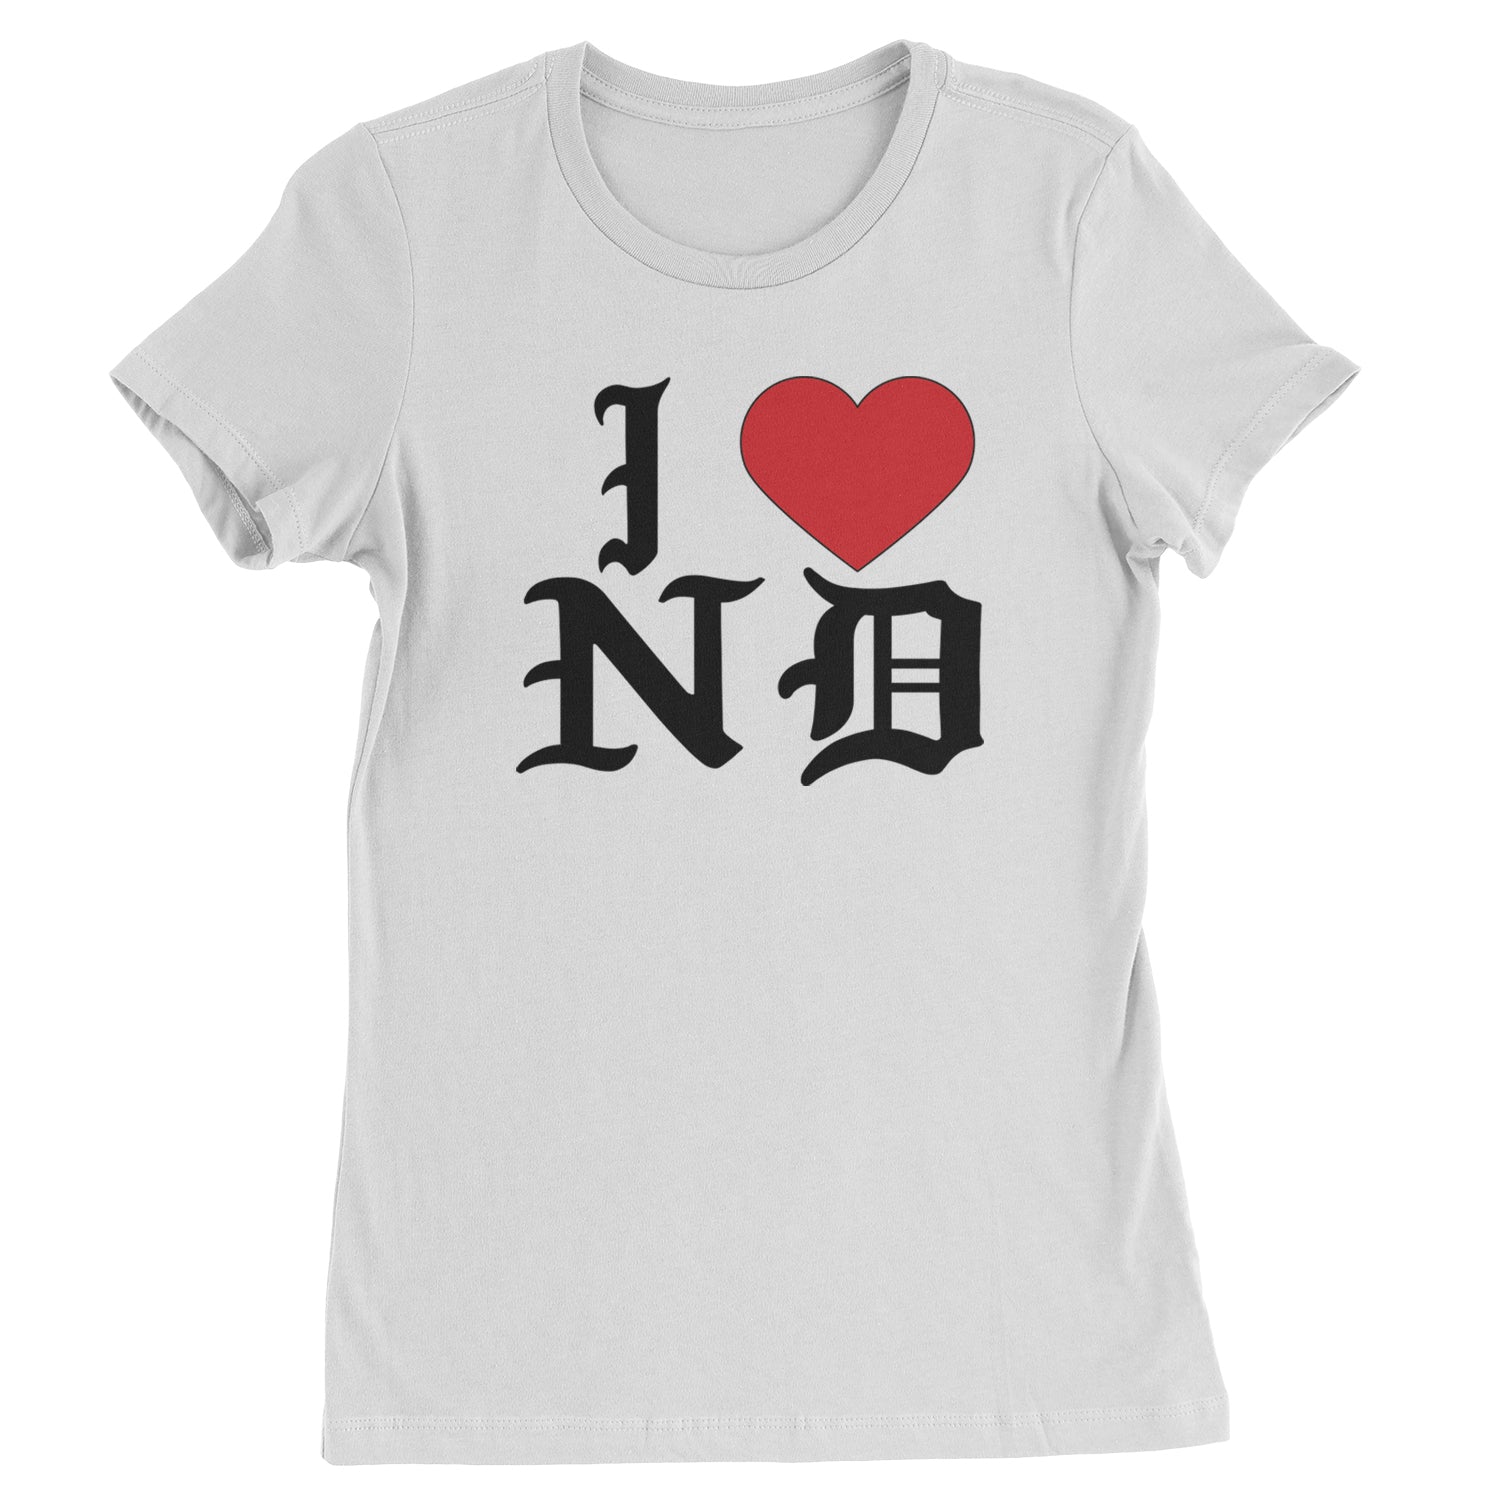 I Heart ND Punk Ska Guts Womens T-shirt